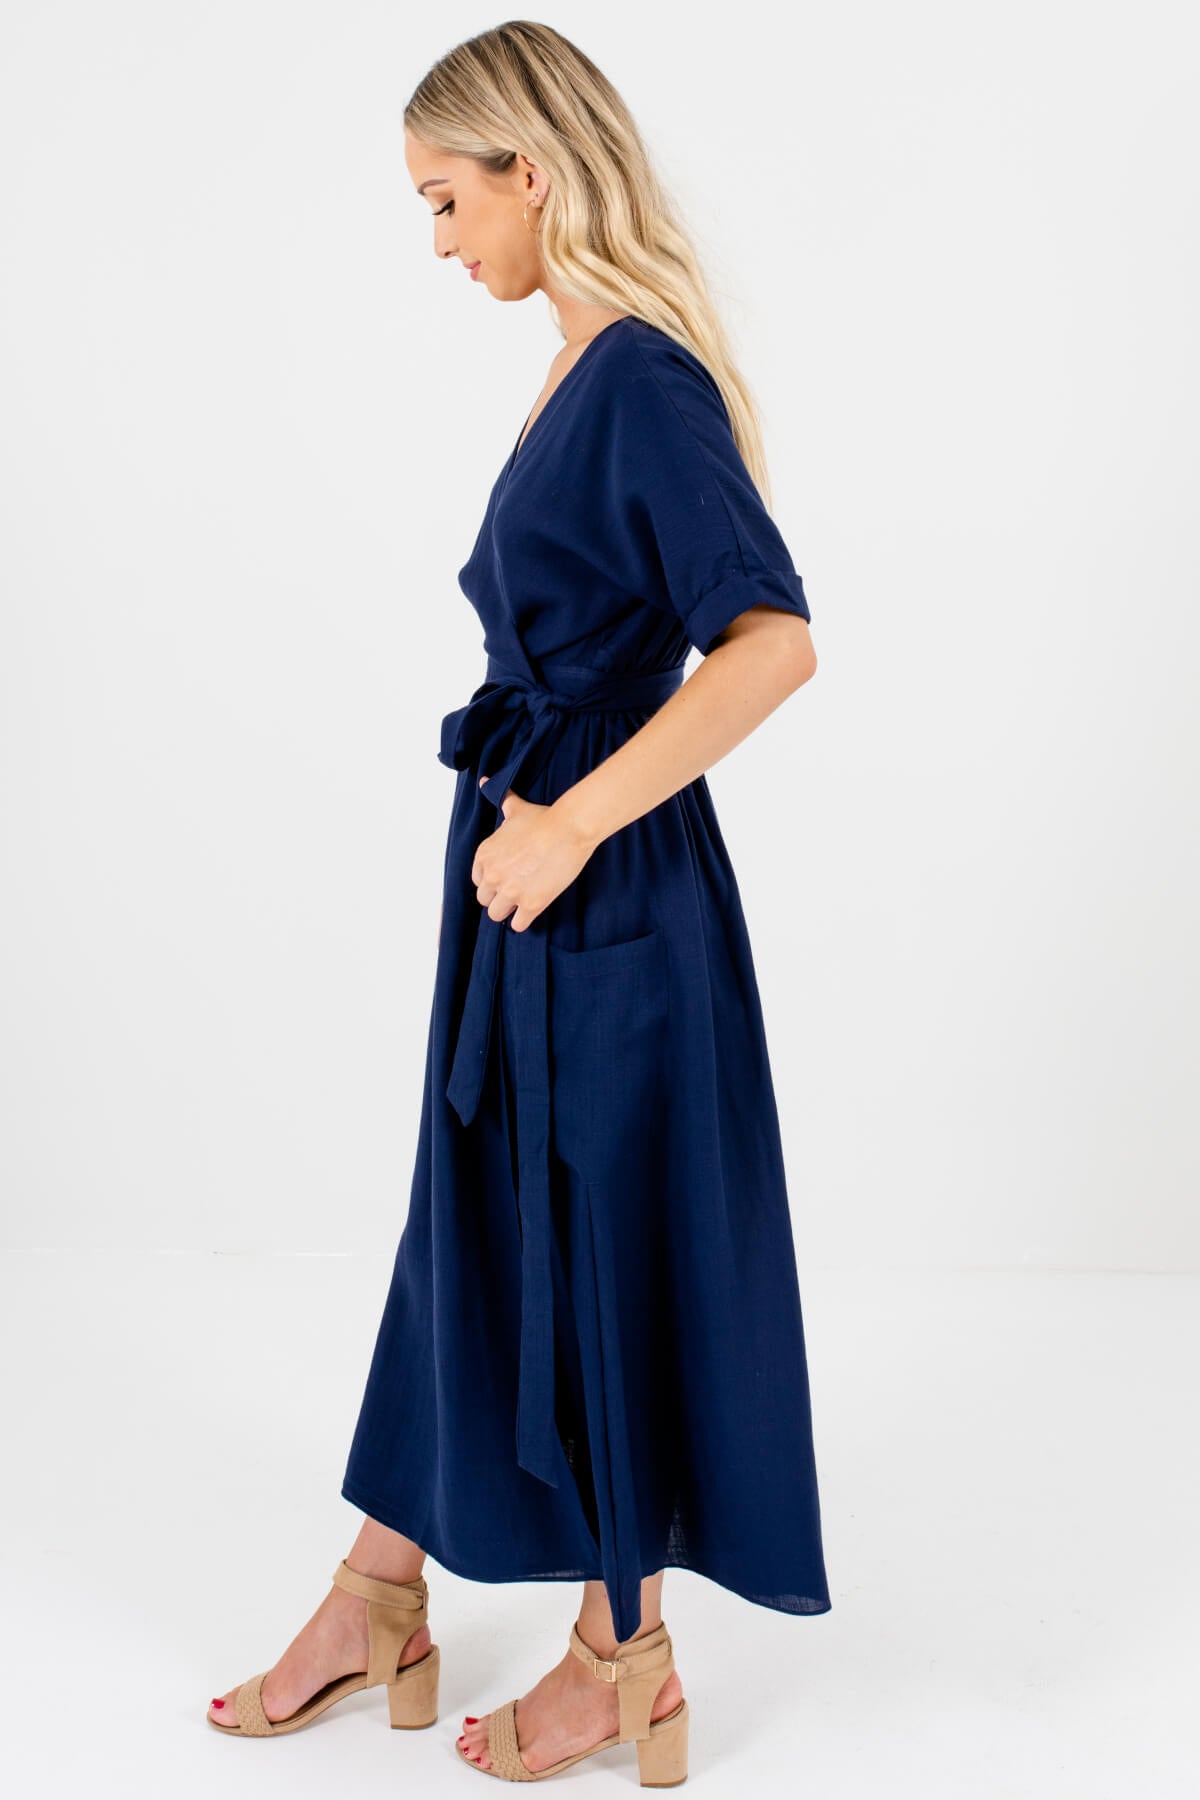 Navy Blue Wrap Maxi Dresses Affordable Online Boutique